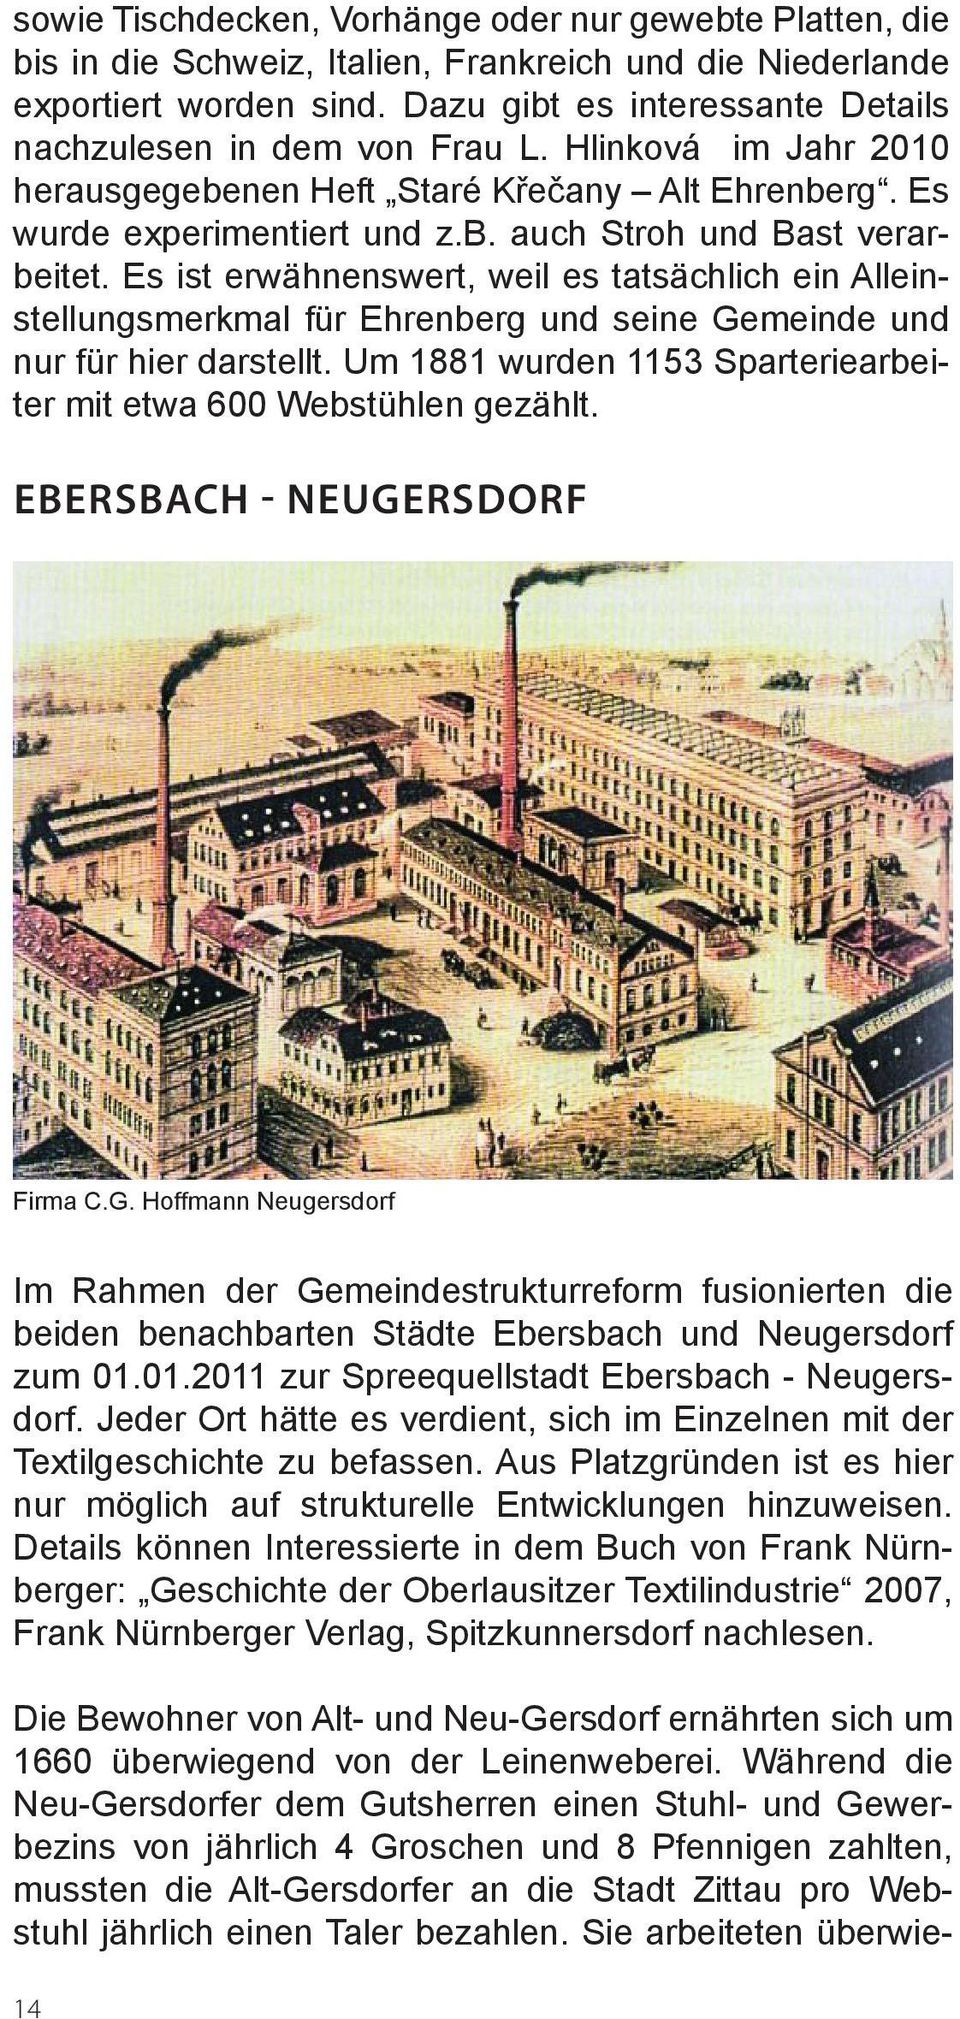 Es ist erwähnenswert, weil es tatsächlich ein Alleinstellungsmerkmal für Ehrenberg und seine Gemeinde und nur für hier darstellt. Um 1881 wurden 1153 Sparteriearbeiter mit etwa 600 Webstühlen gezählt.